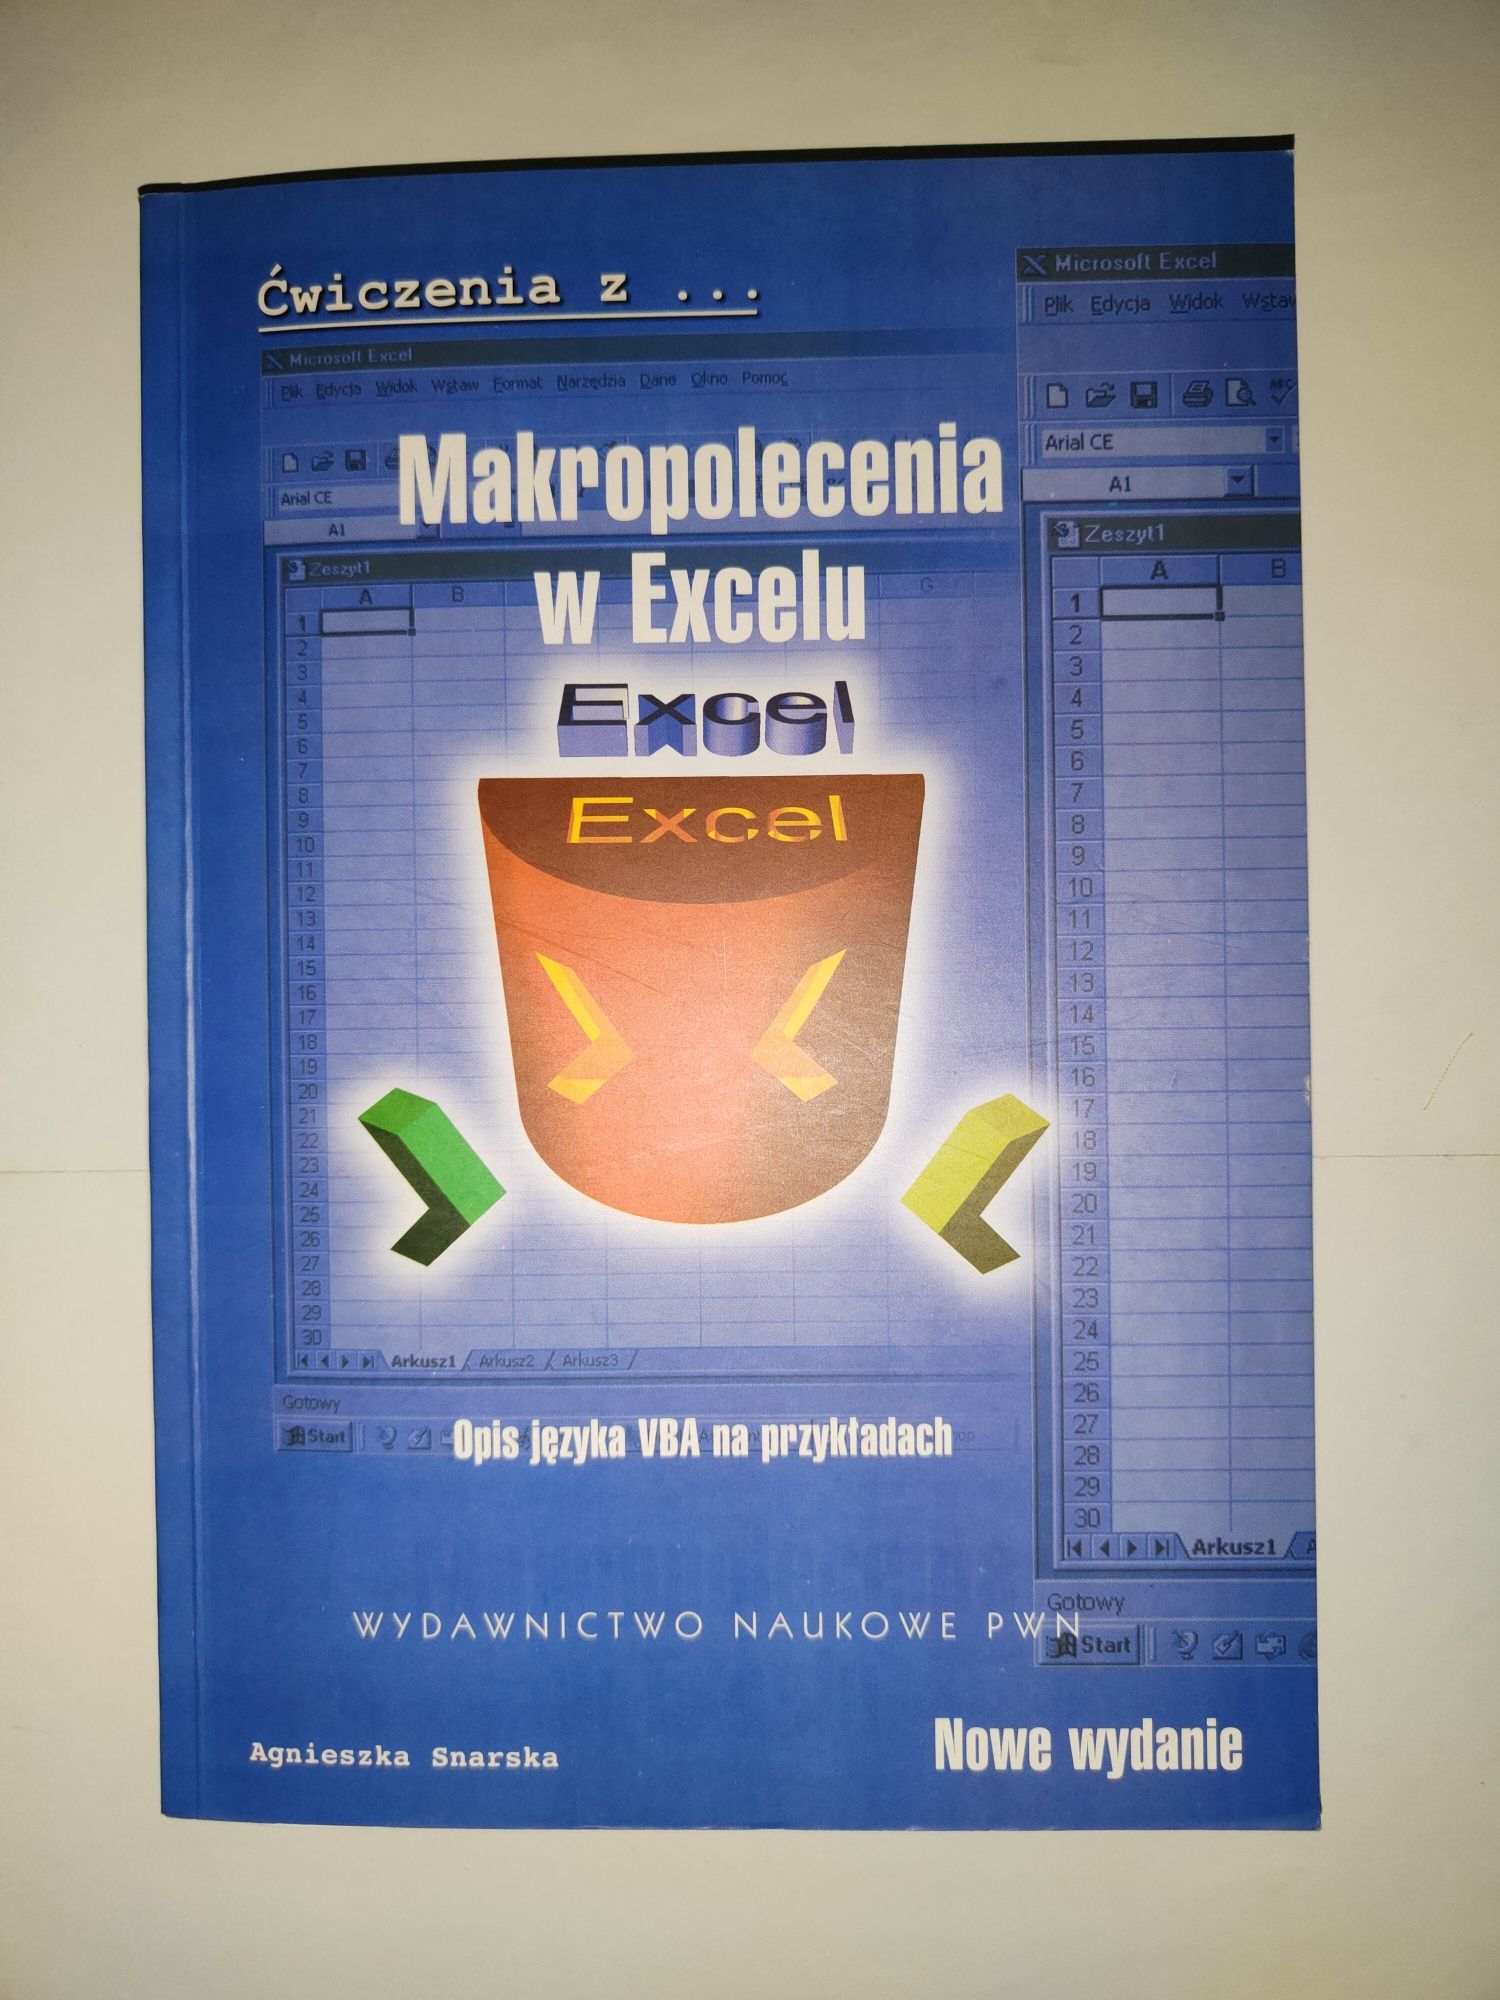 Makropolecenia w Excelu Opis języka VBA
Agnieszka Snarska